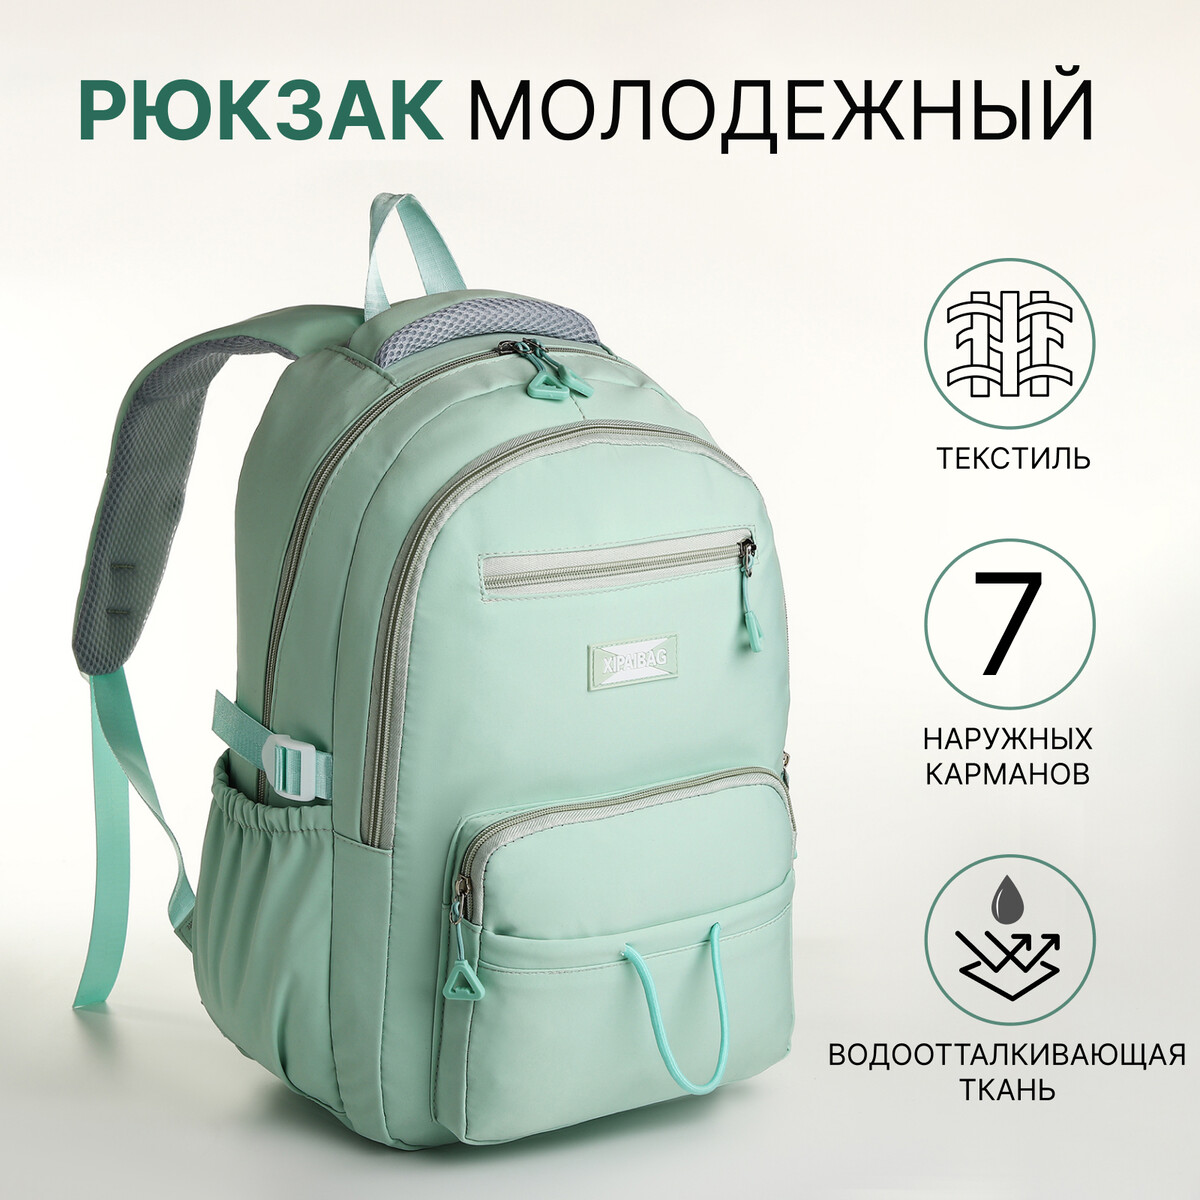 Рюкзак школьный из текстиля на молнии, 7 карманов, цвет зеленый рюкзак школьный из текстиля на молнии 7 карманов